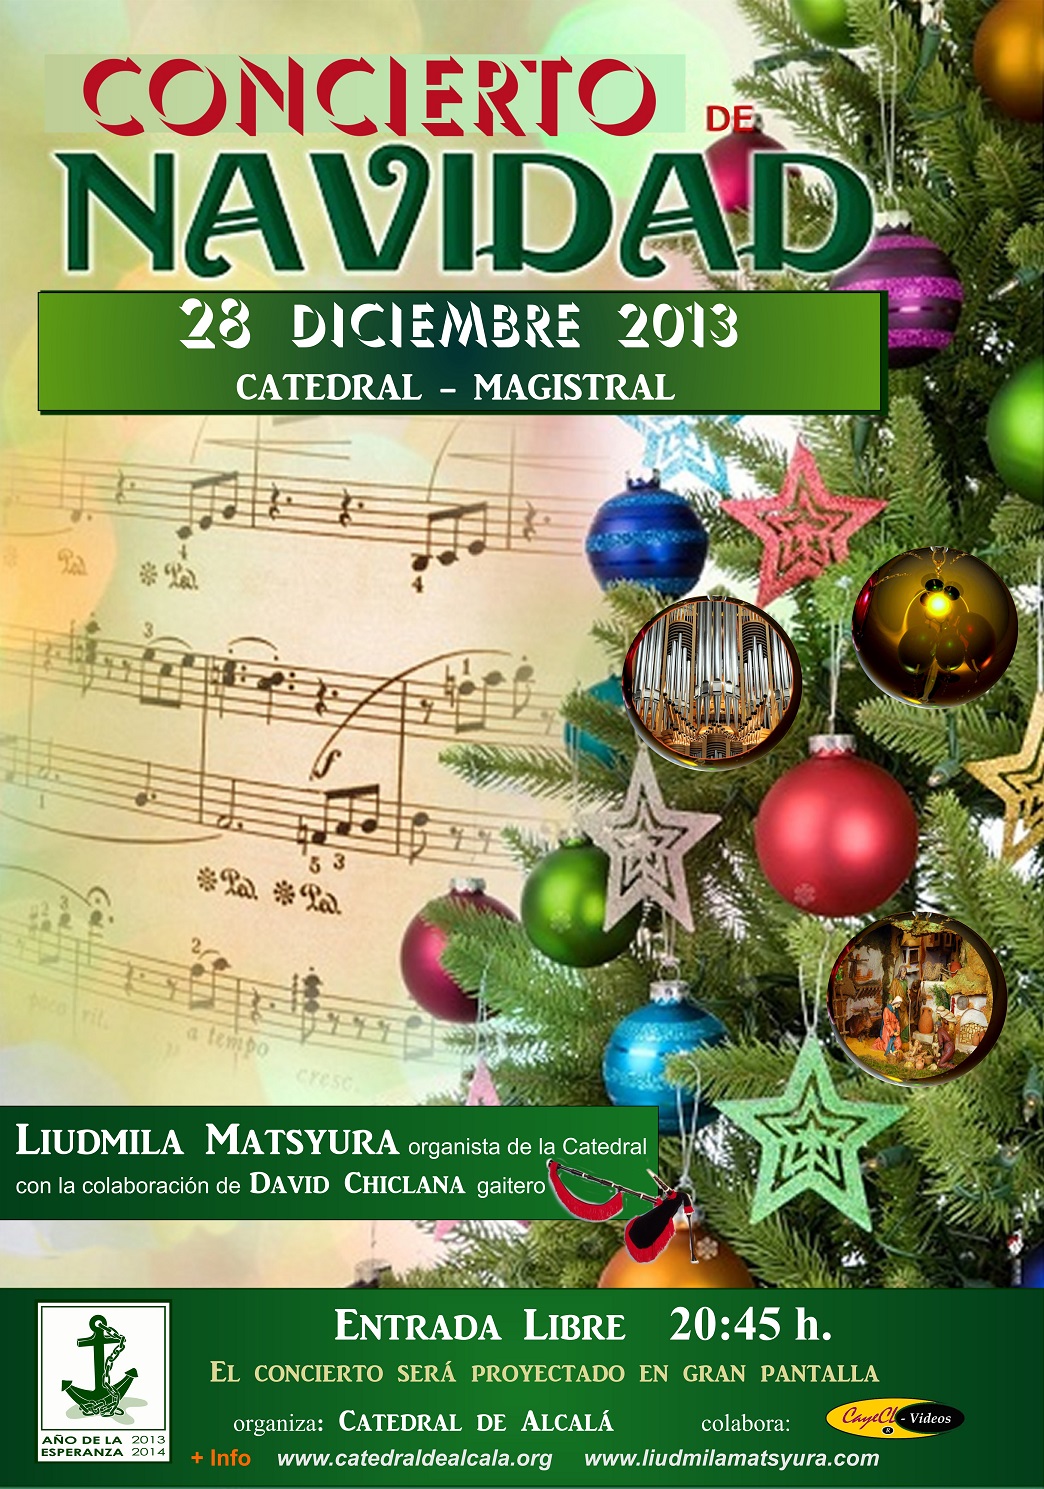 Concierto de Navidad -Liudmila Matsyura 28-12-2013